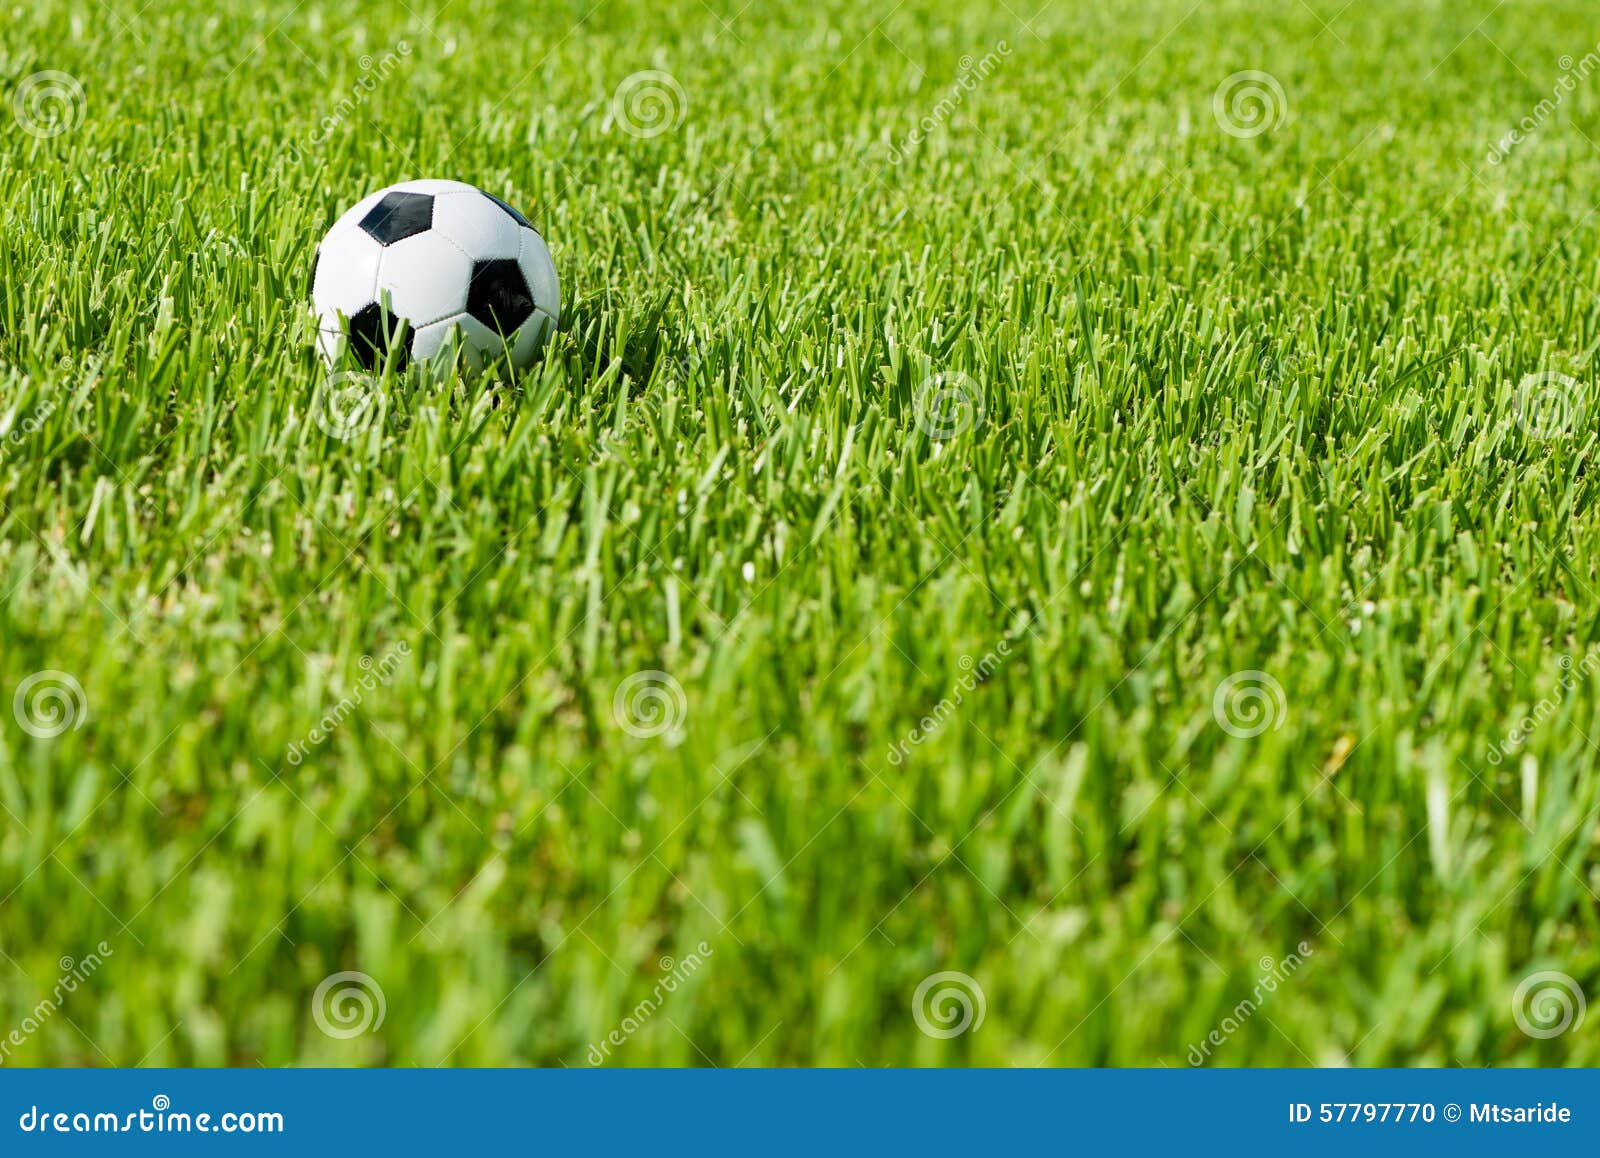 soccer ball football on grass